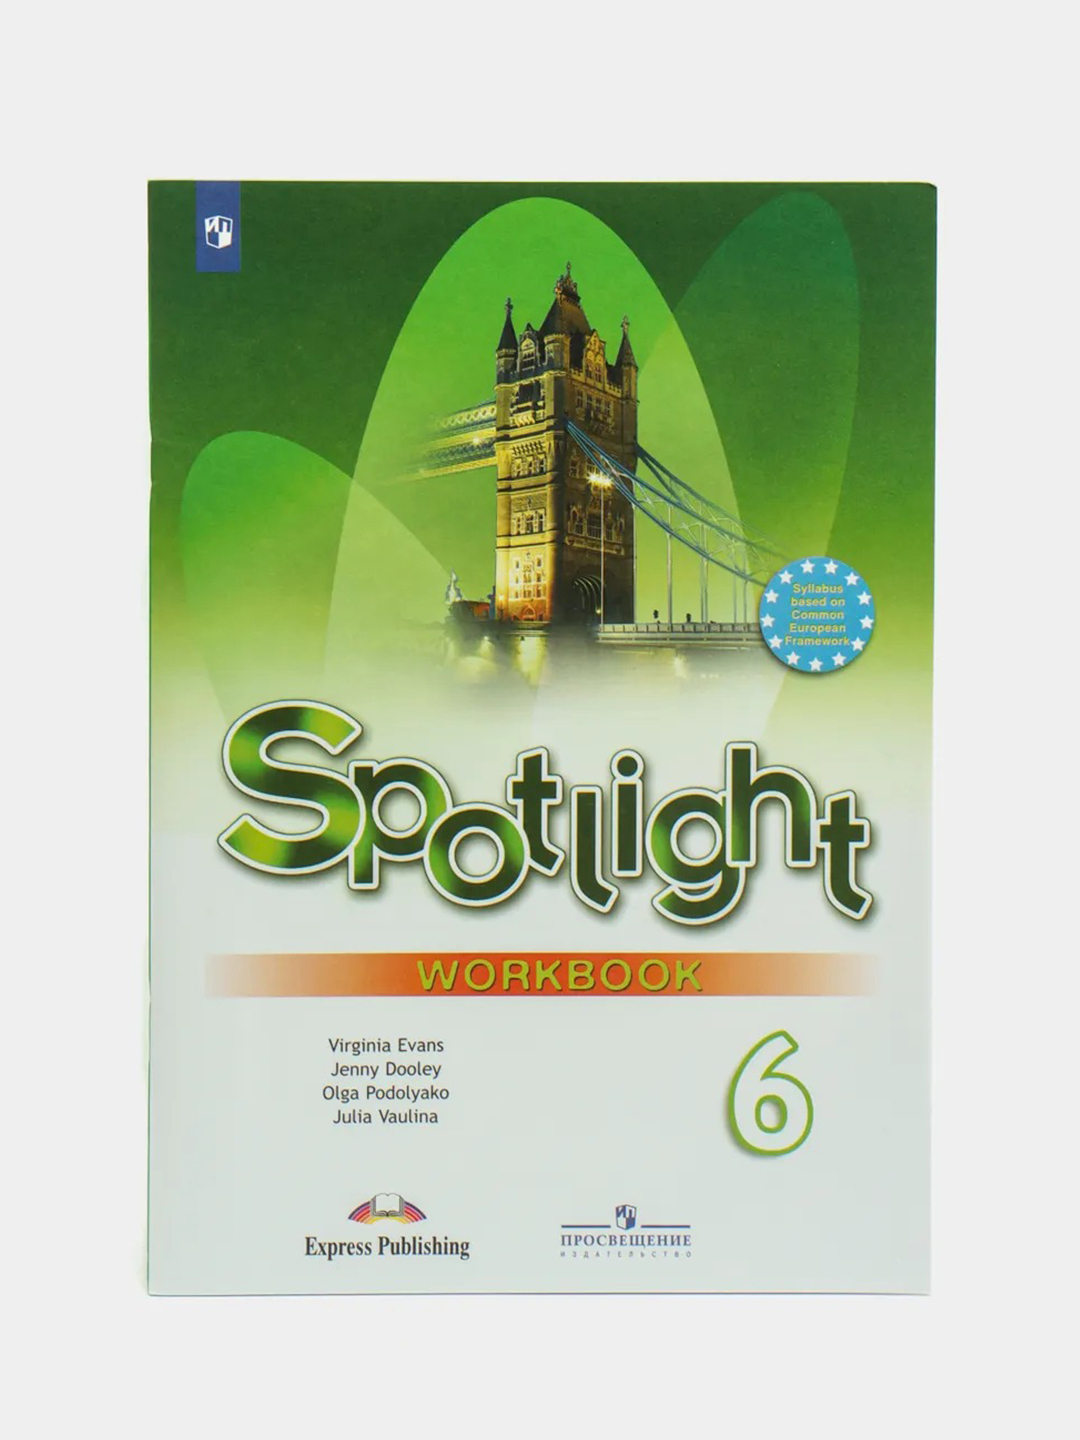 Английский 9 класс spotlight workbook. Spotlight 7 класс 7 Wordbook. Workbook 8 класс Spotlight. Ваулина ю.е., Дули Дженни, Подоляко о.е., Эванс. Спотлайт 8 рабочая тетрадь.